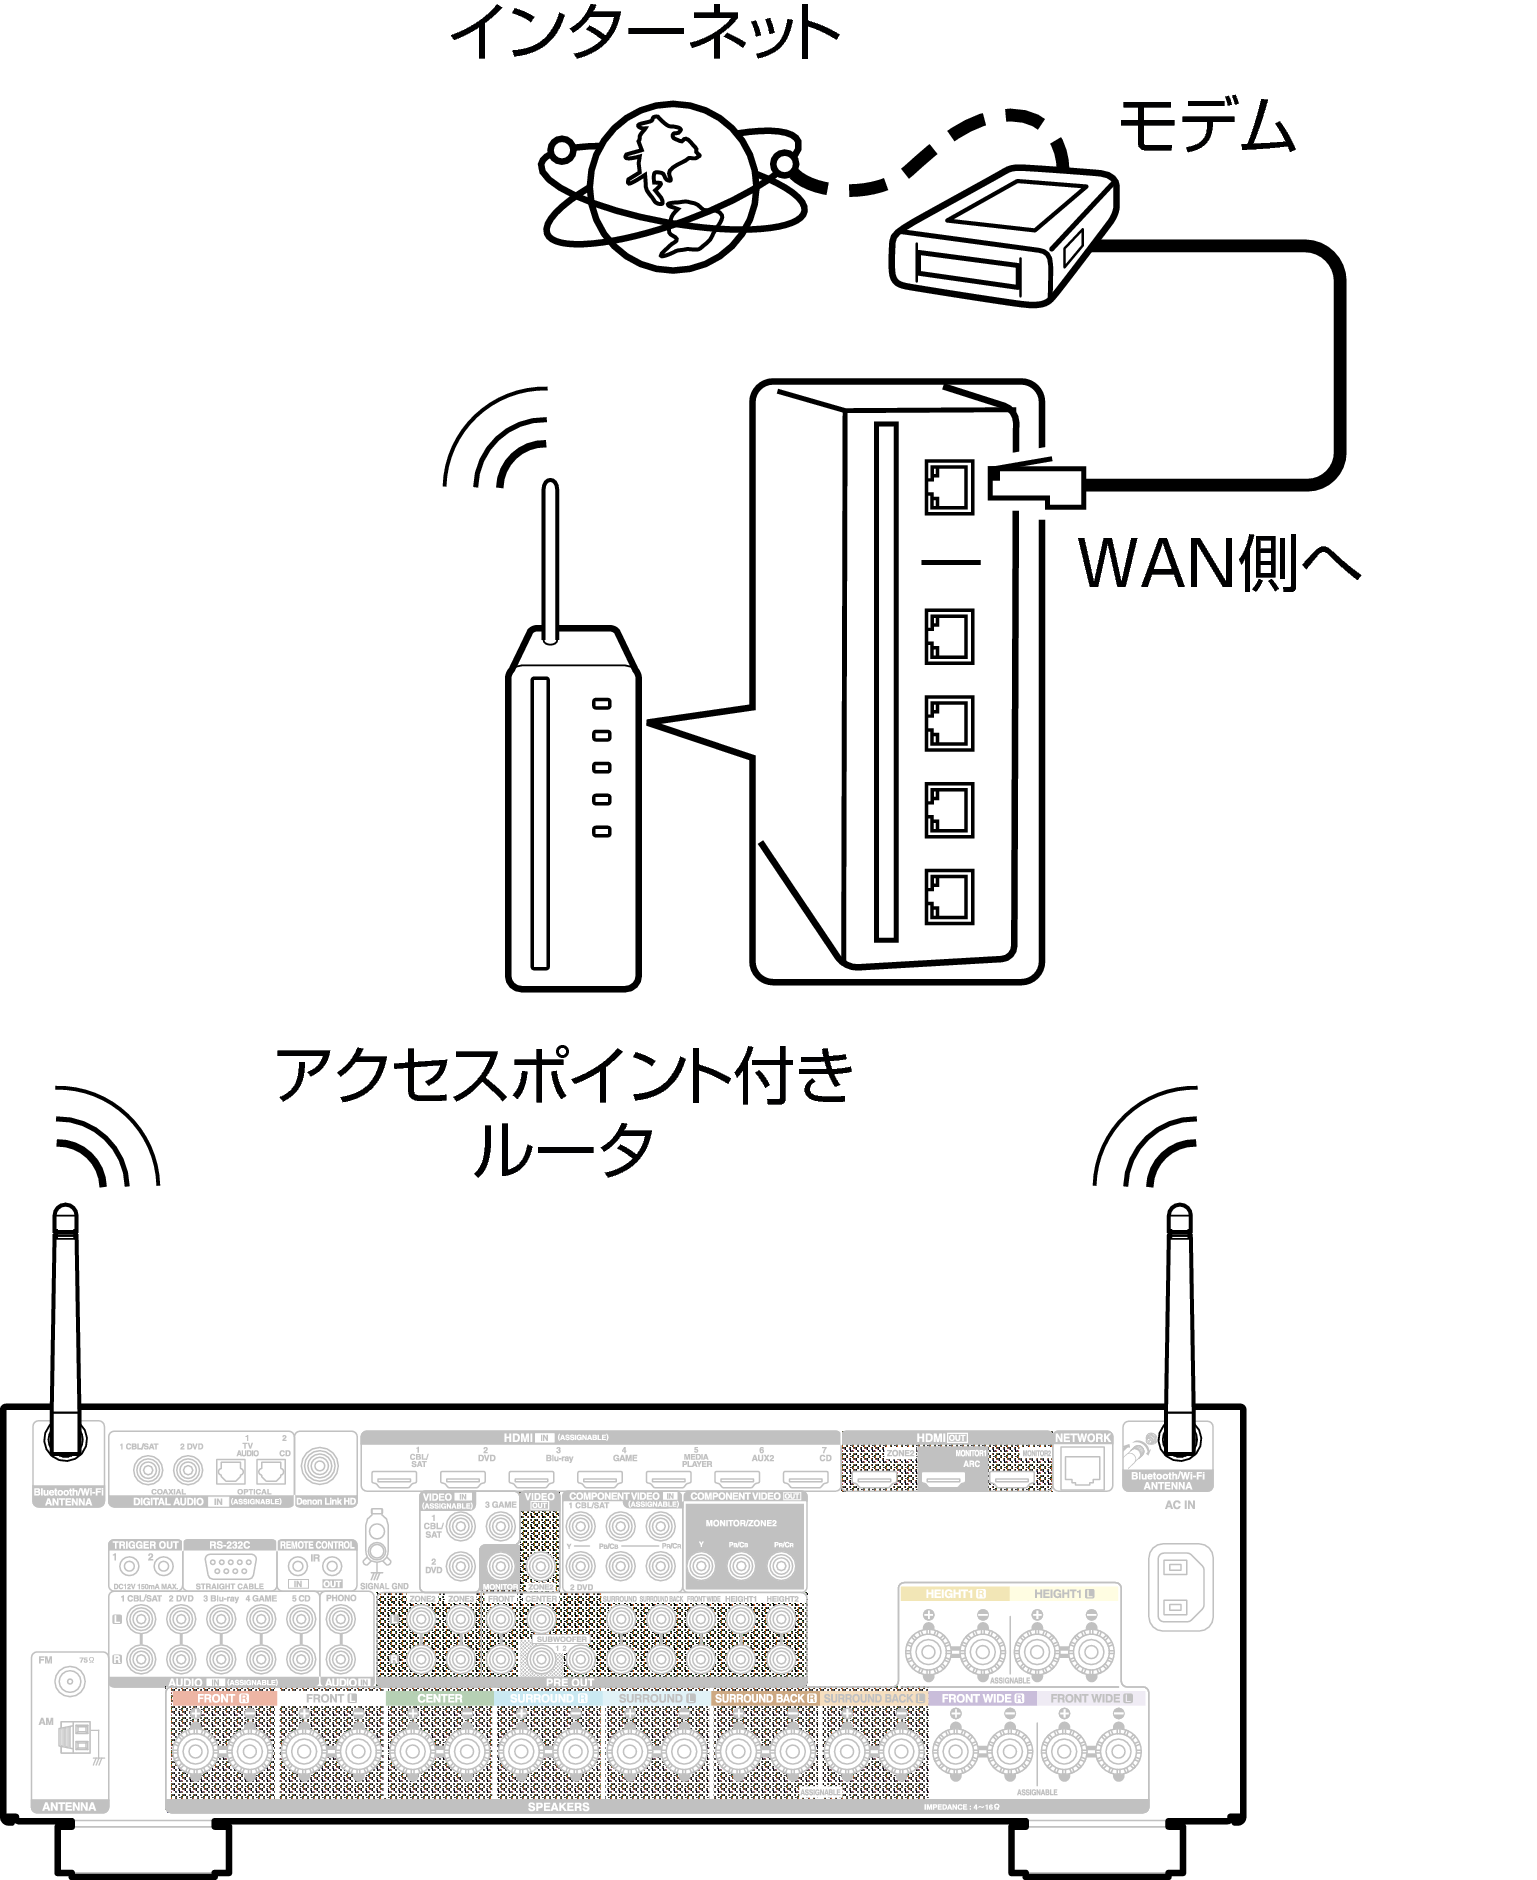 Conne Wireless X4200E3